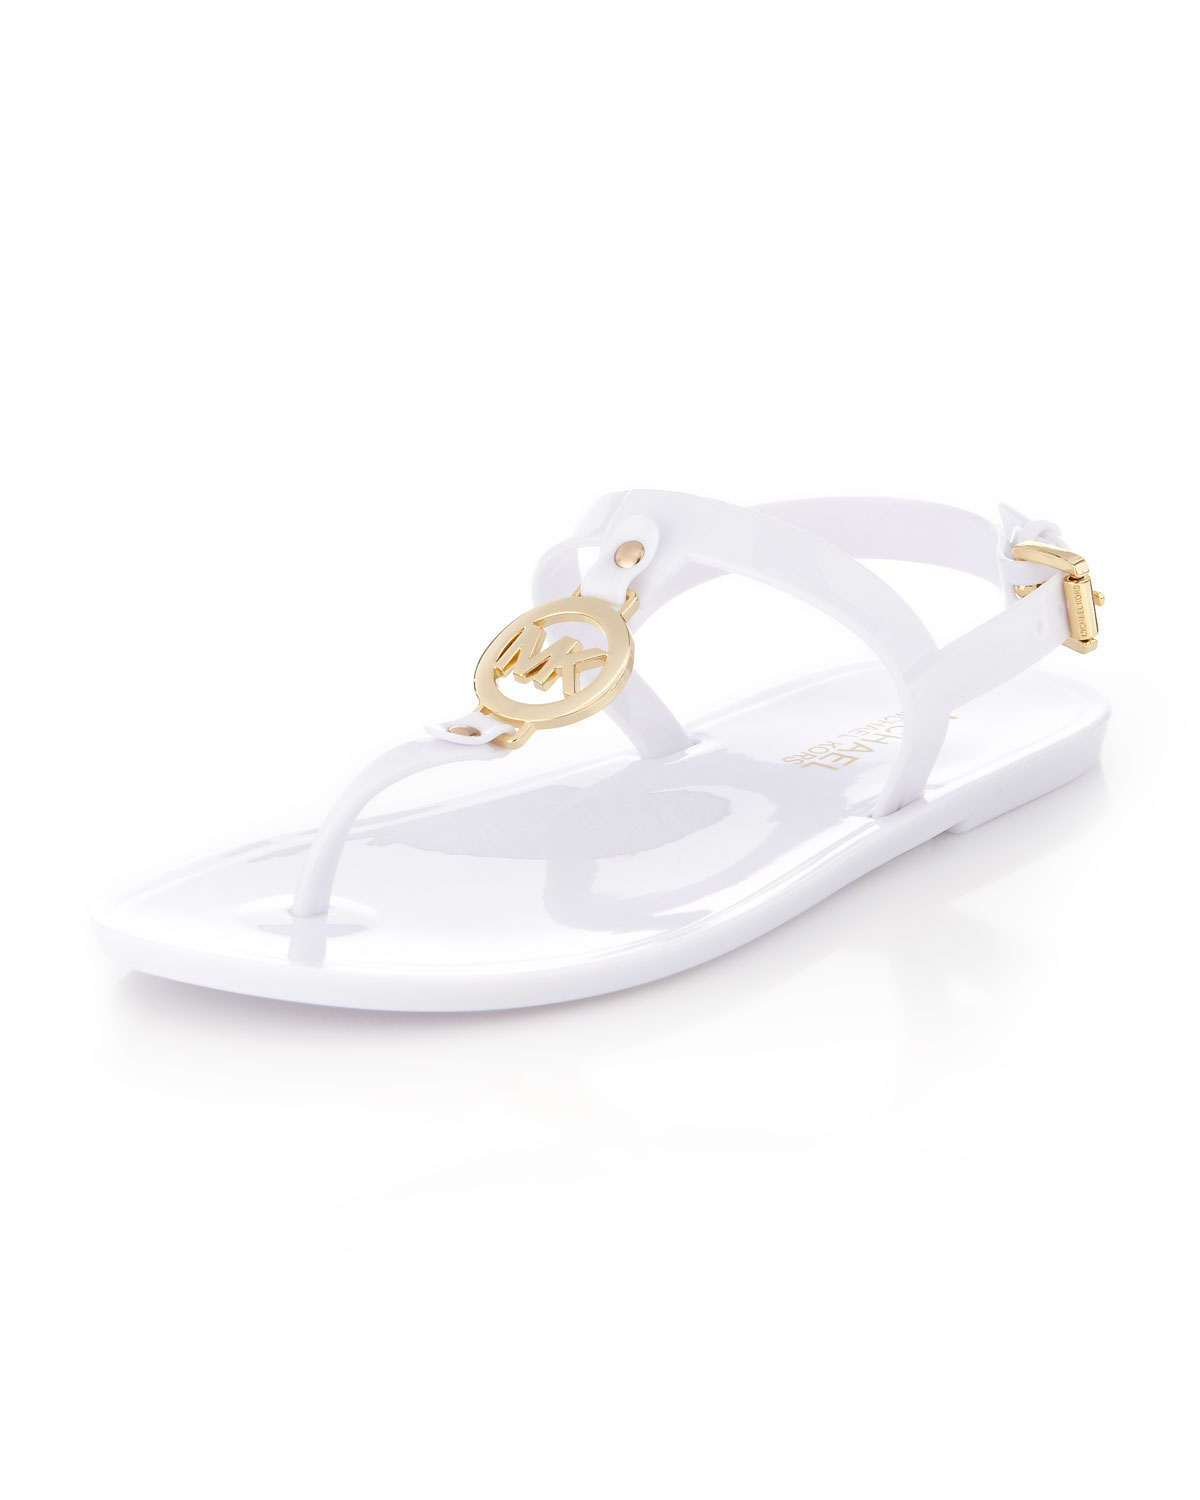 Michael Kors Sondra Jelly Thong Sandal in White - Lyst